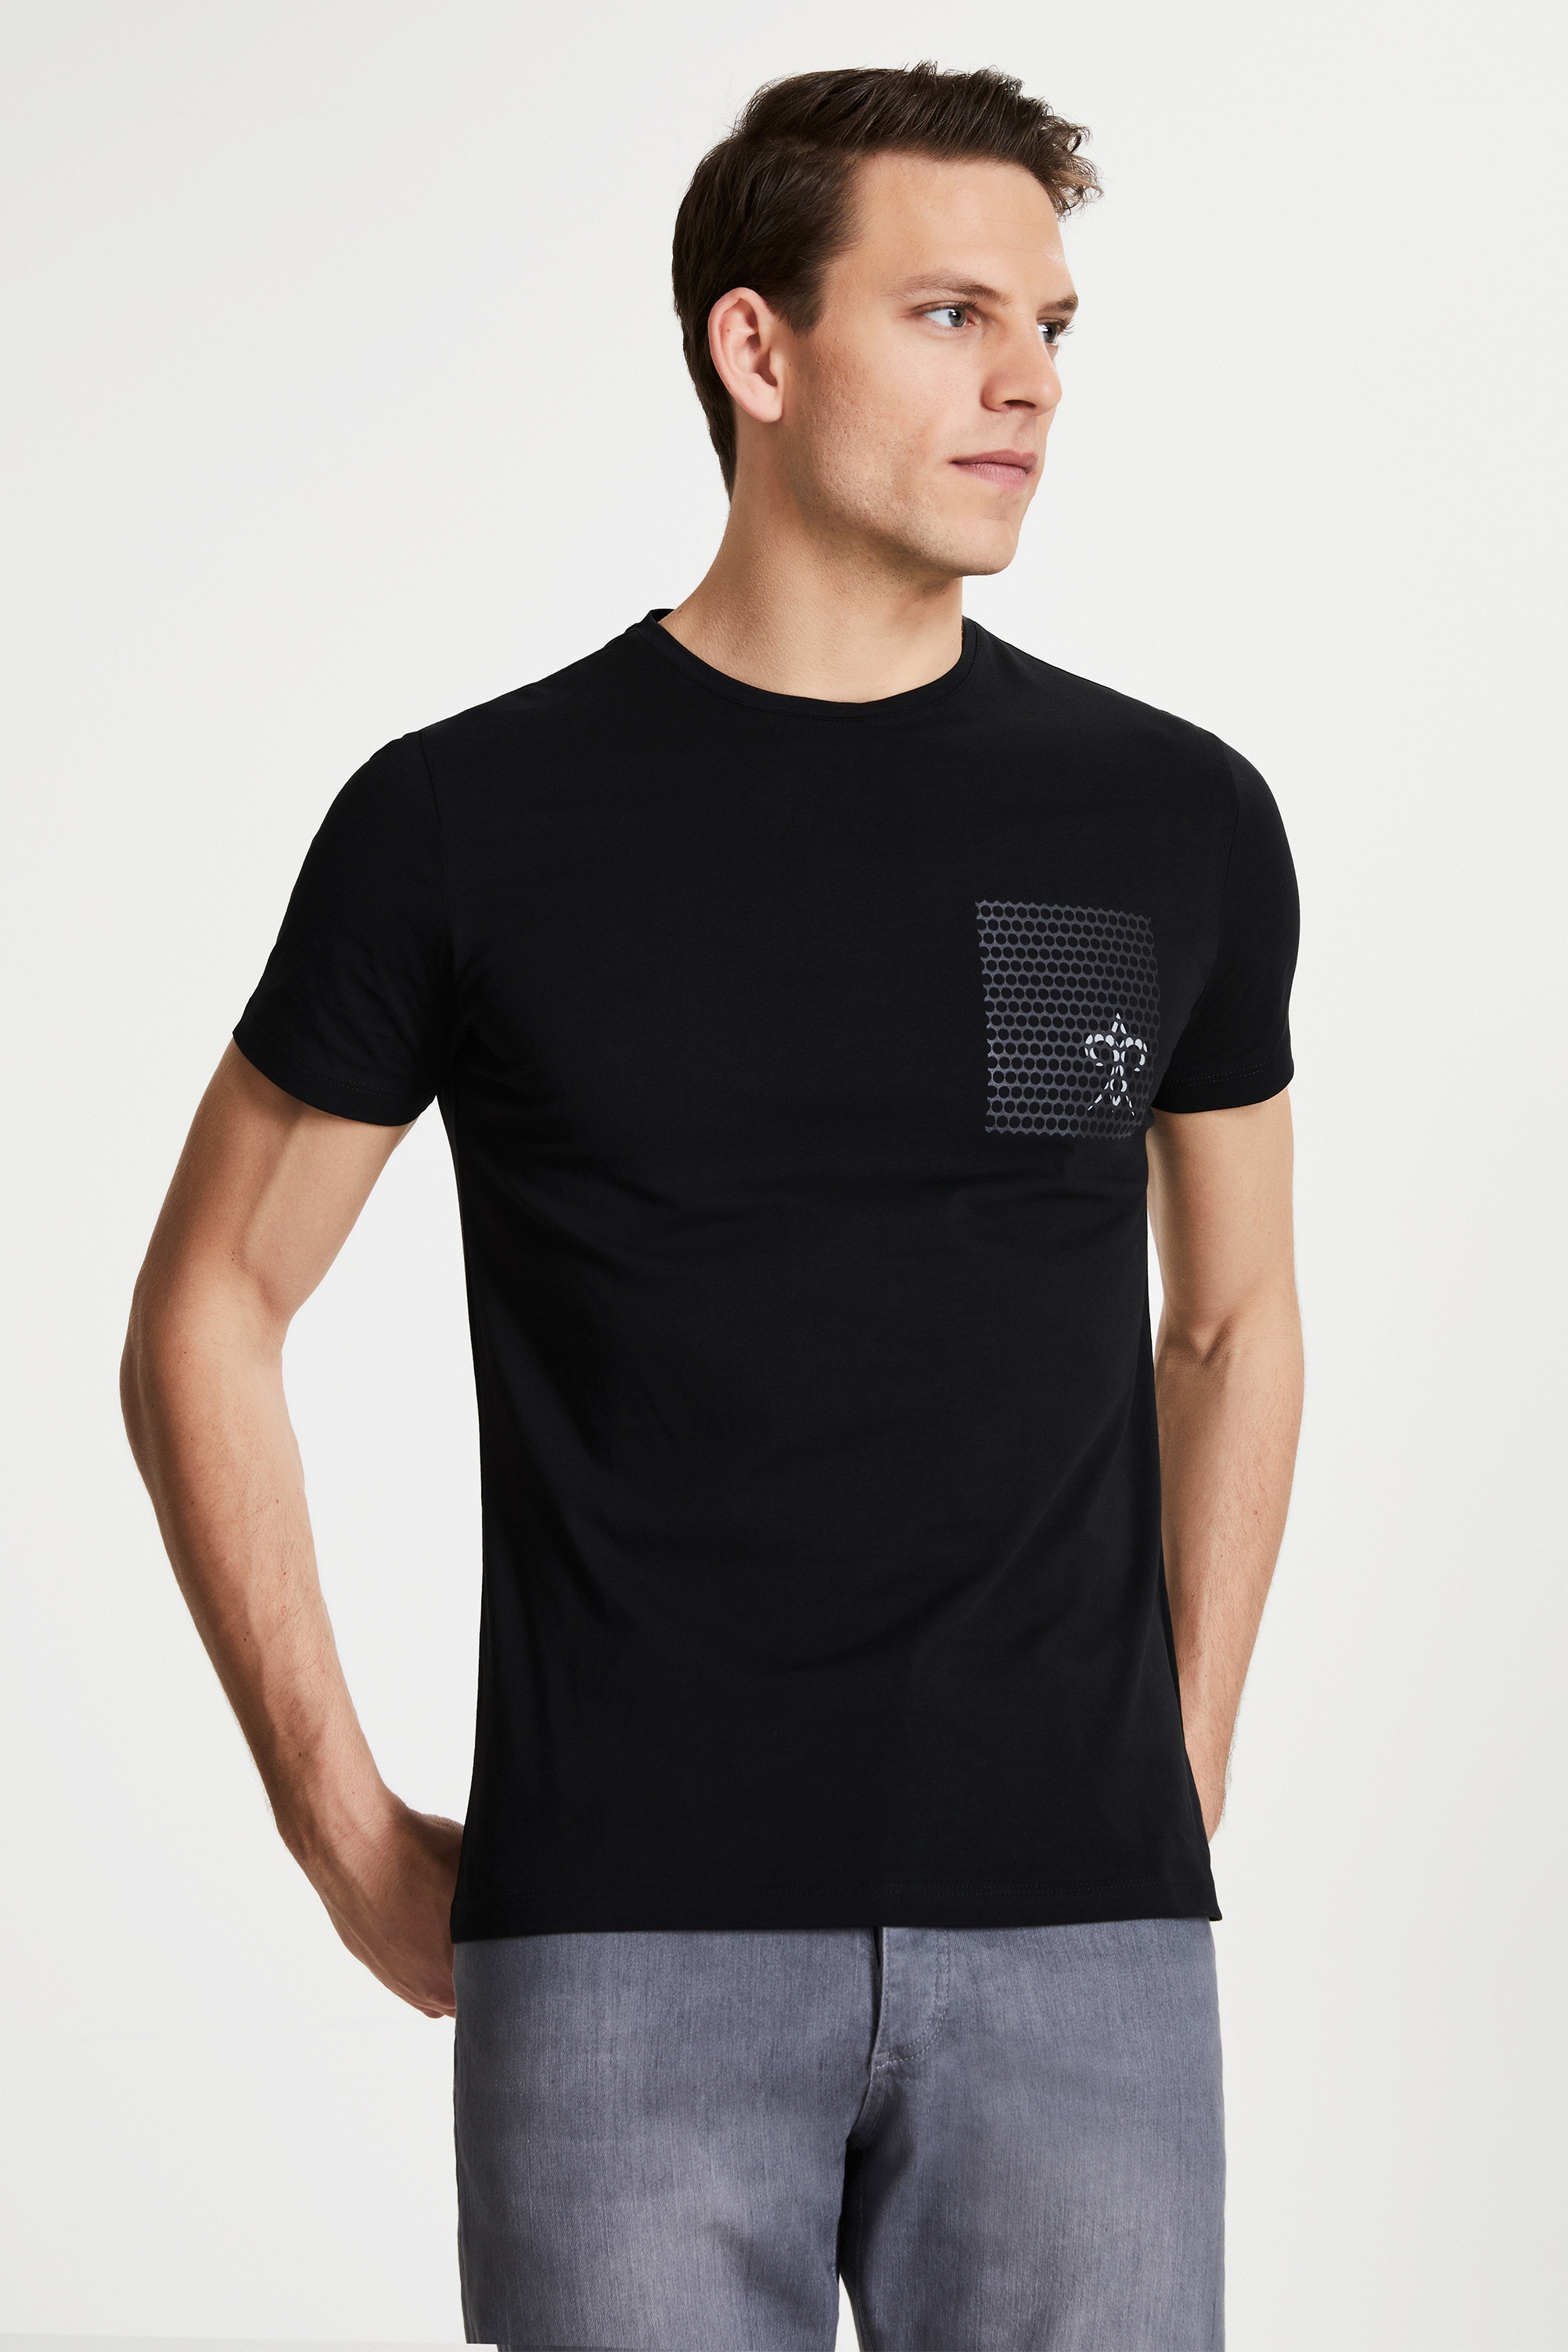 Damat Tween Damat Siyah Çizgili Baskılı T-shirt. 1